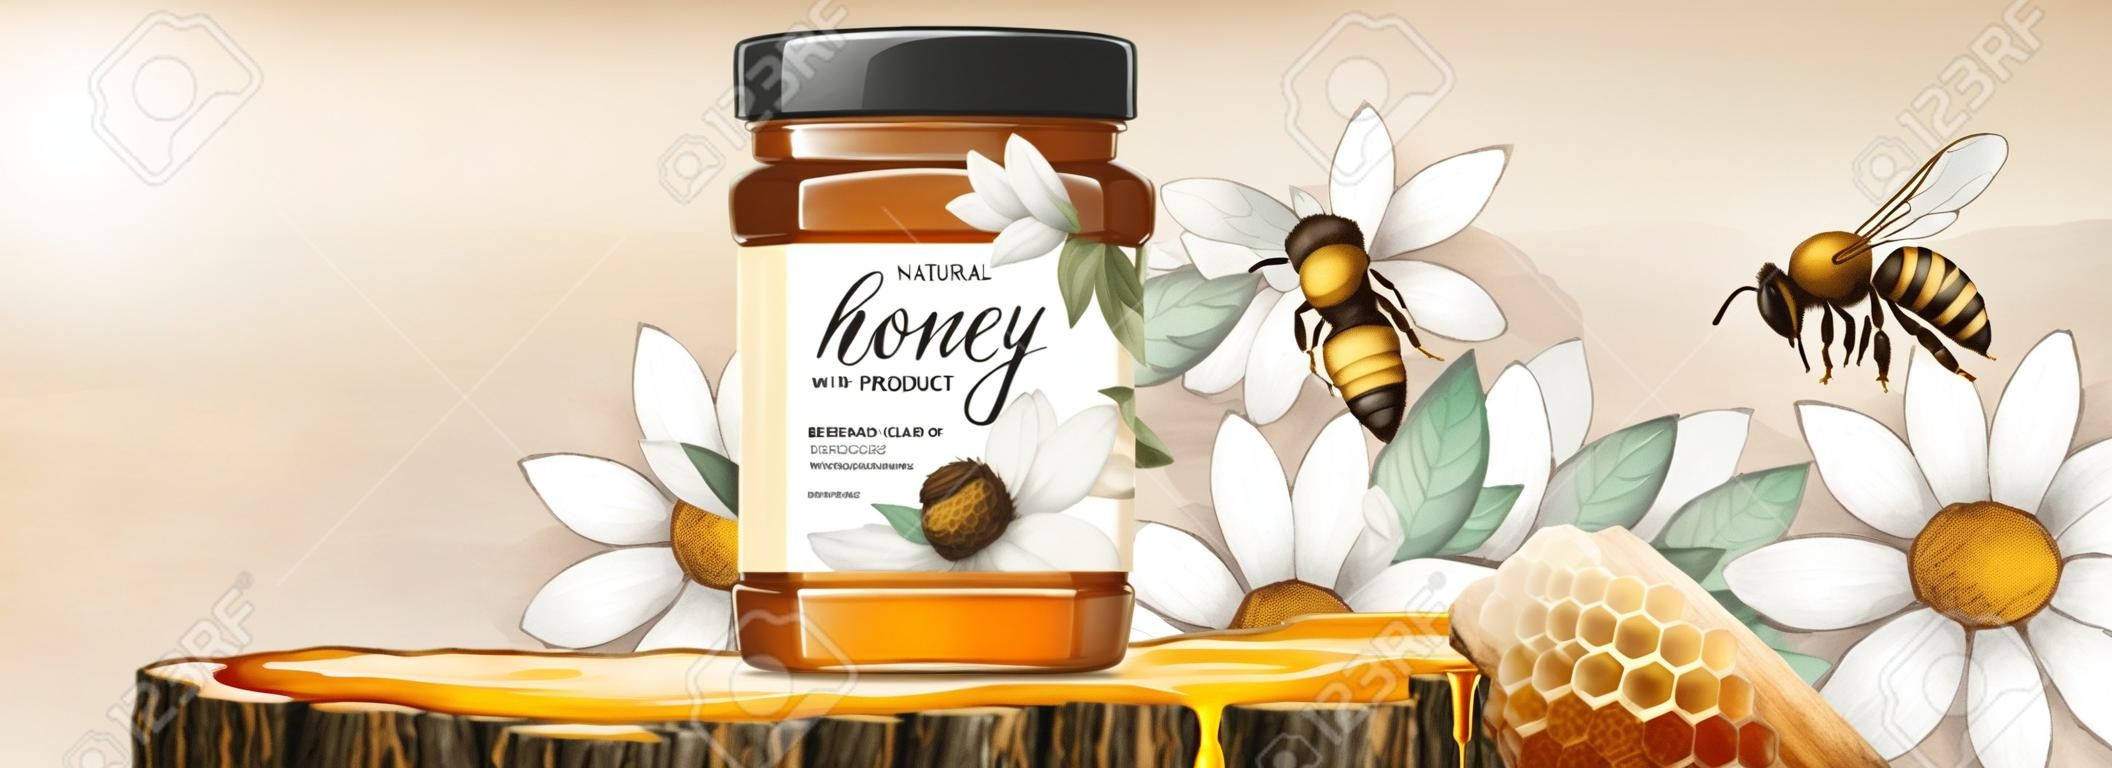 3d 그림에서 나무 줄기 섹션 플랫폼에 벌집이 있는 천연 꿀 제품, 흰색 꽃 목판화 배경